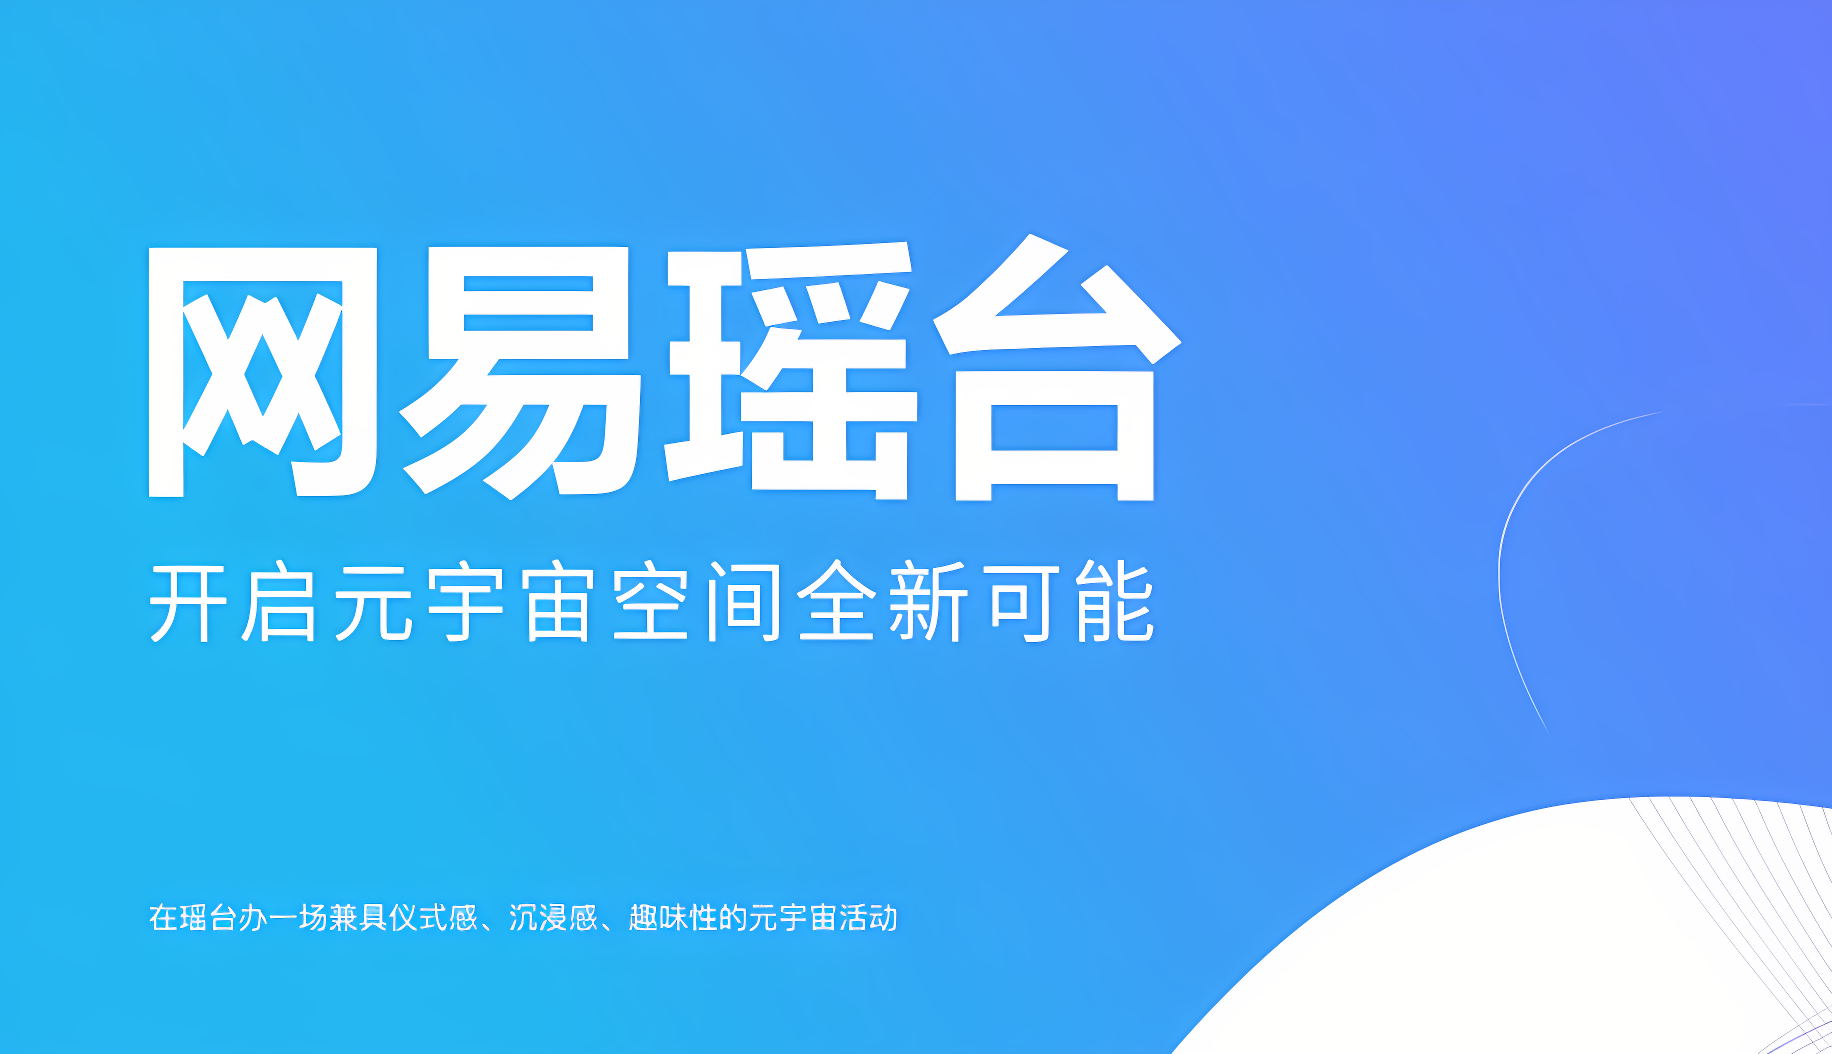 图片展示了蓝色背景上的白色中文文字，标志性地宣传“周末会”，并有新方式共享空间的标语。